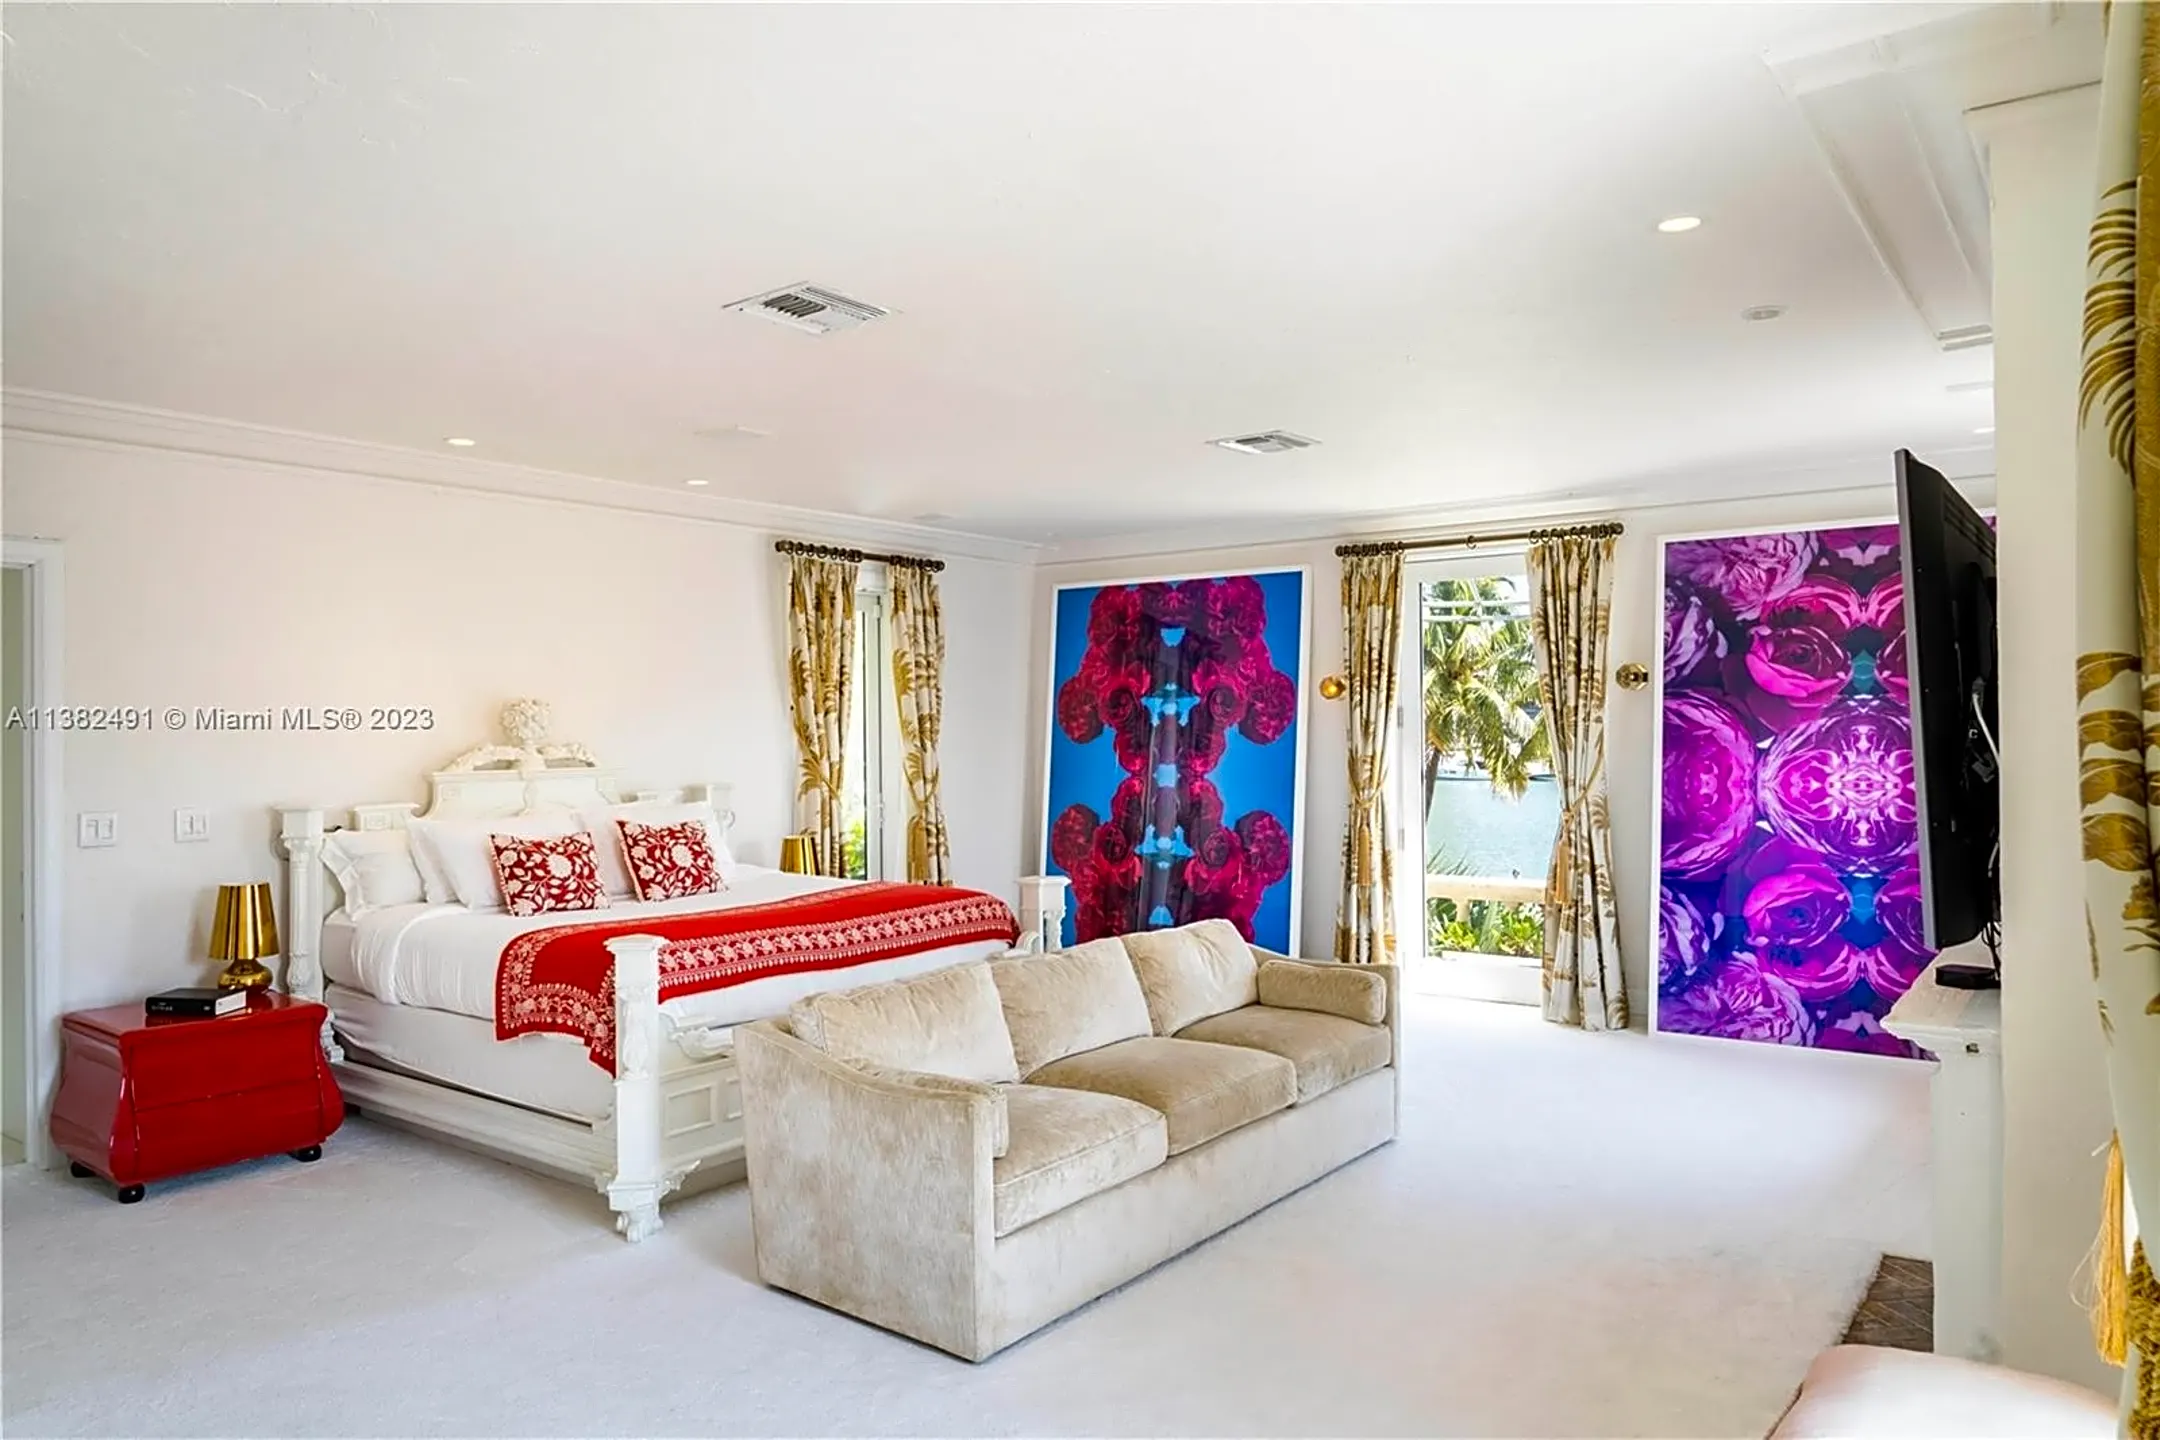 Living Room - 4731 Pine Tree Dr - Miami Beach, FL